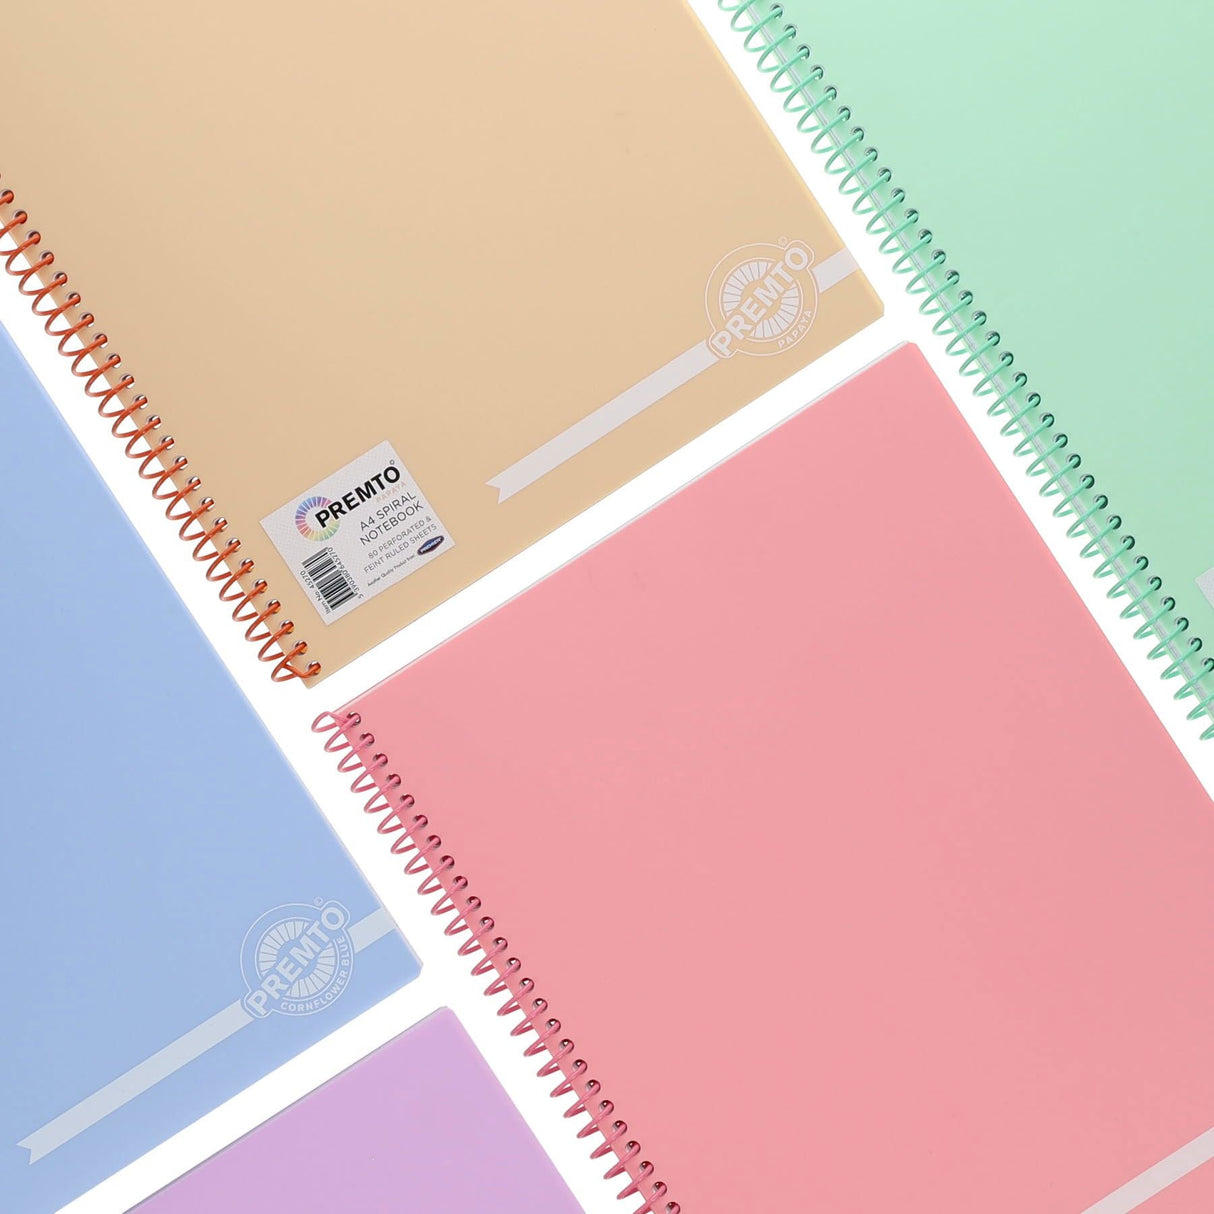 Premto Pastel A4 Spiral Notebook PP - 160 Pages - Pink Sherbet-A4 Notebooks-Premto|StationeryShop.co.uk